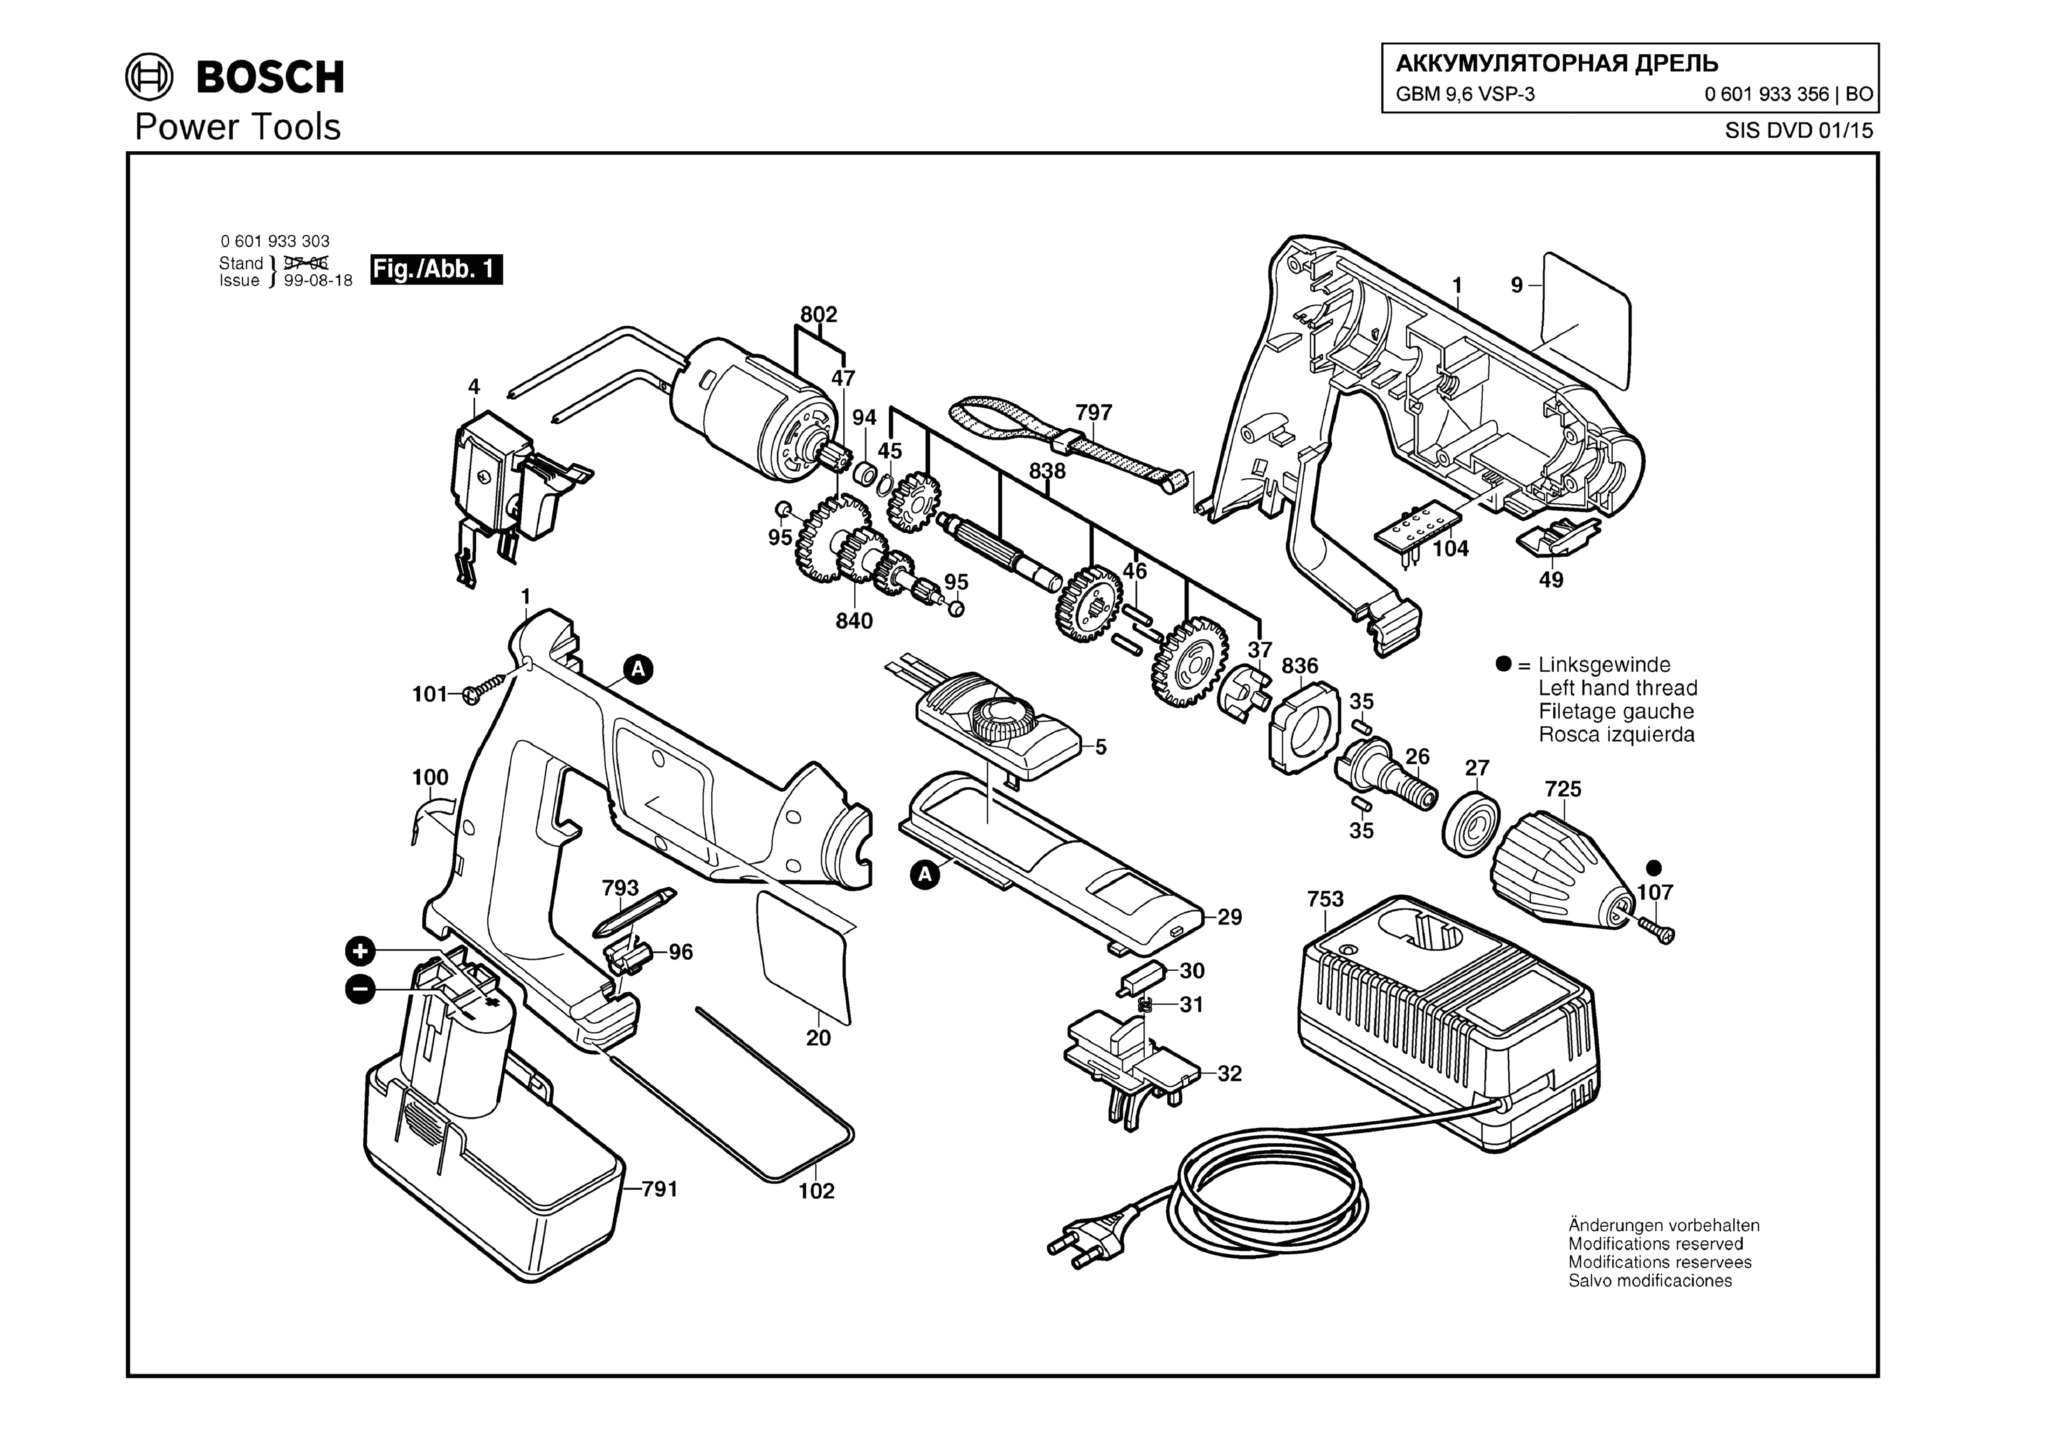 Запчасти, схема и деталировка Bosch GBM 9,6 VSP-3 (ТИП 0601933356)